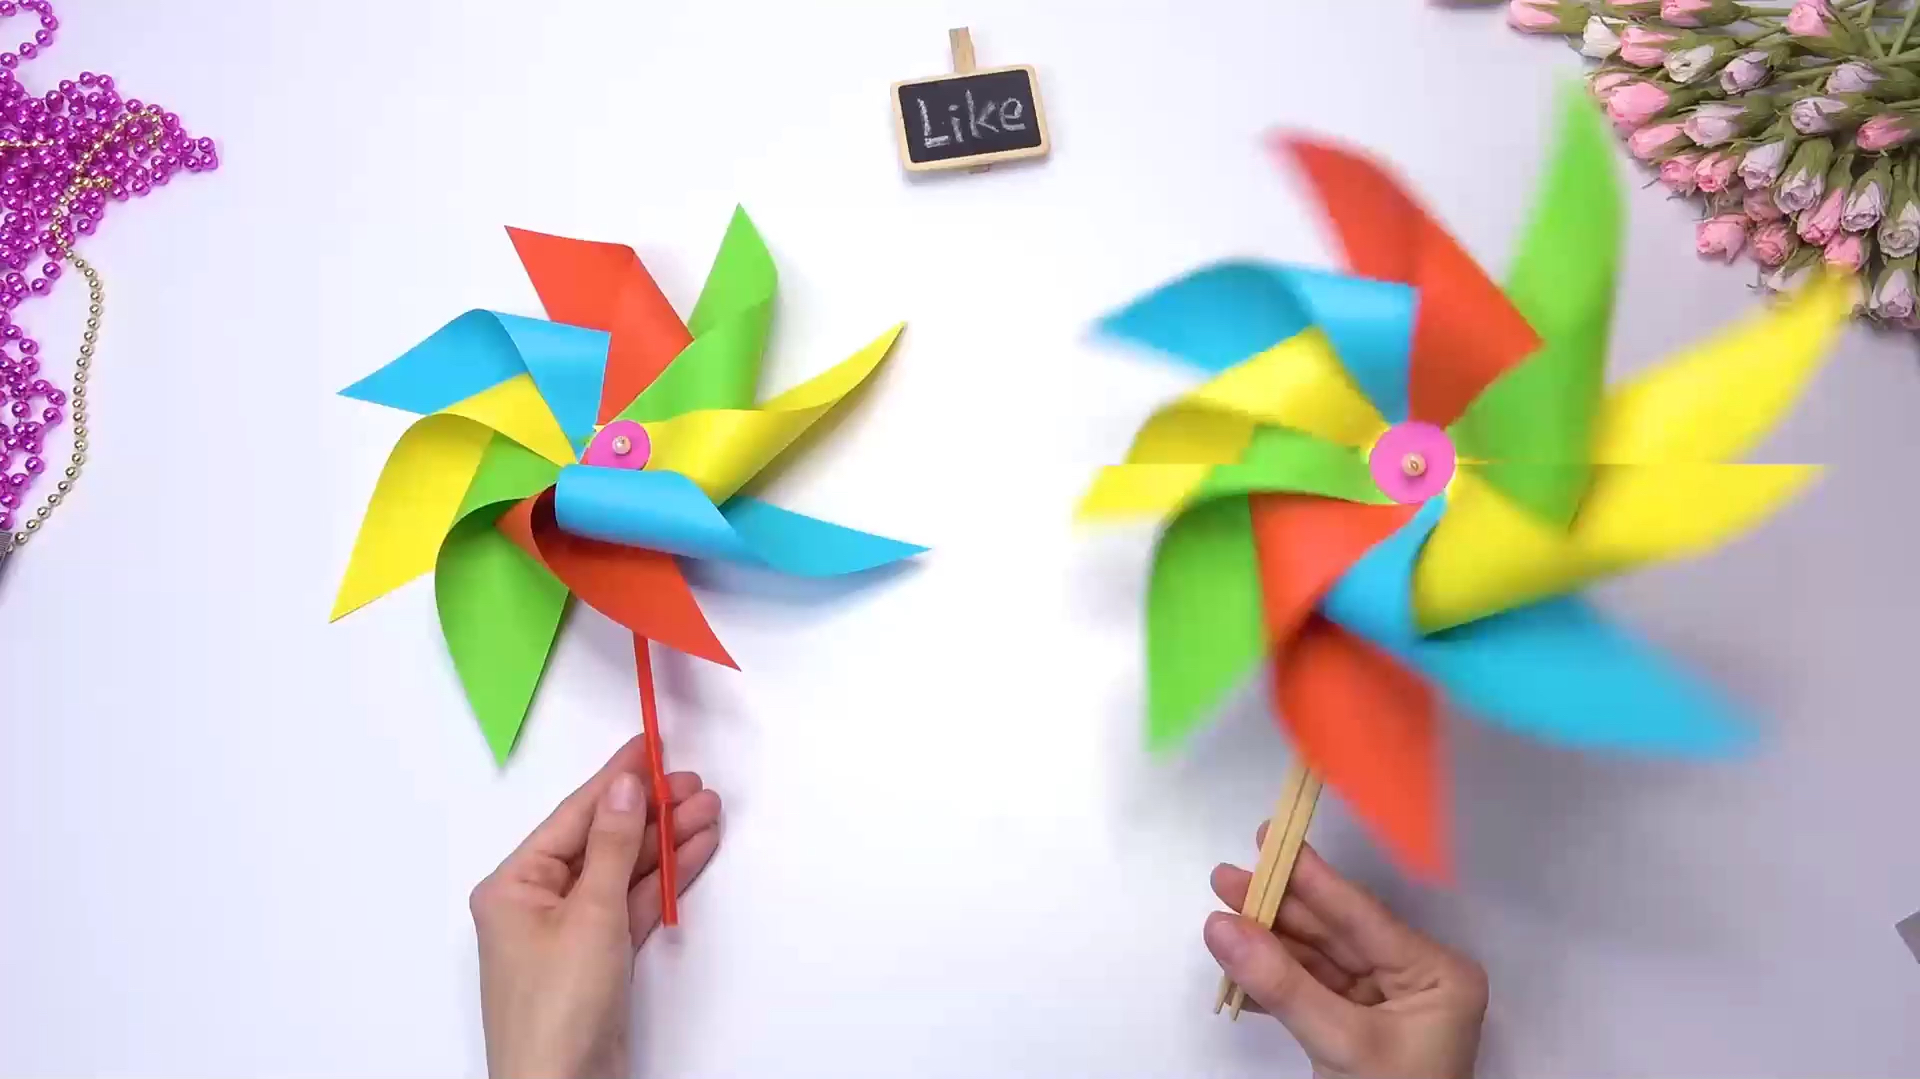 创意手工折纸,七彩风车制作!